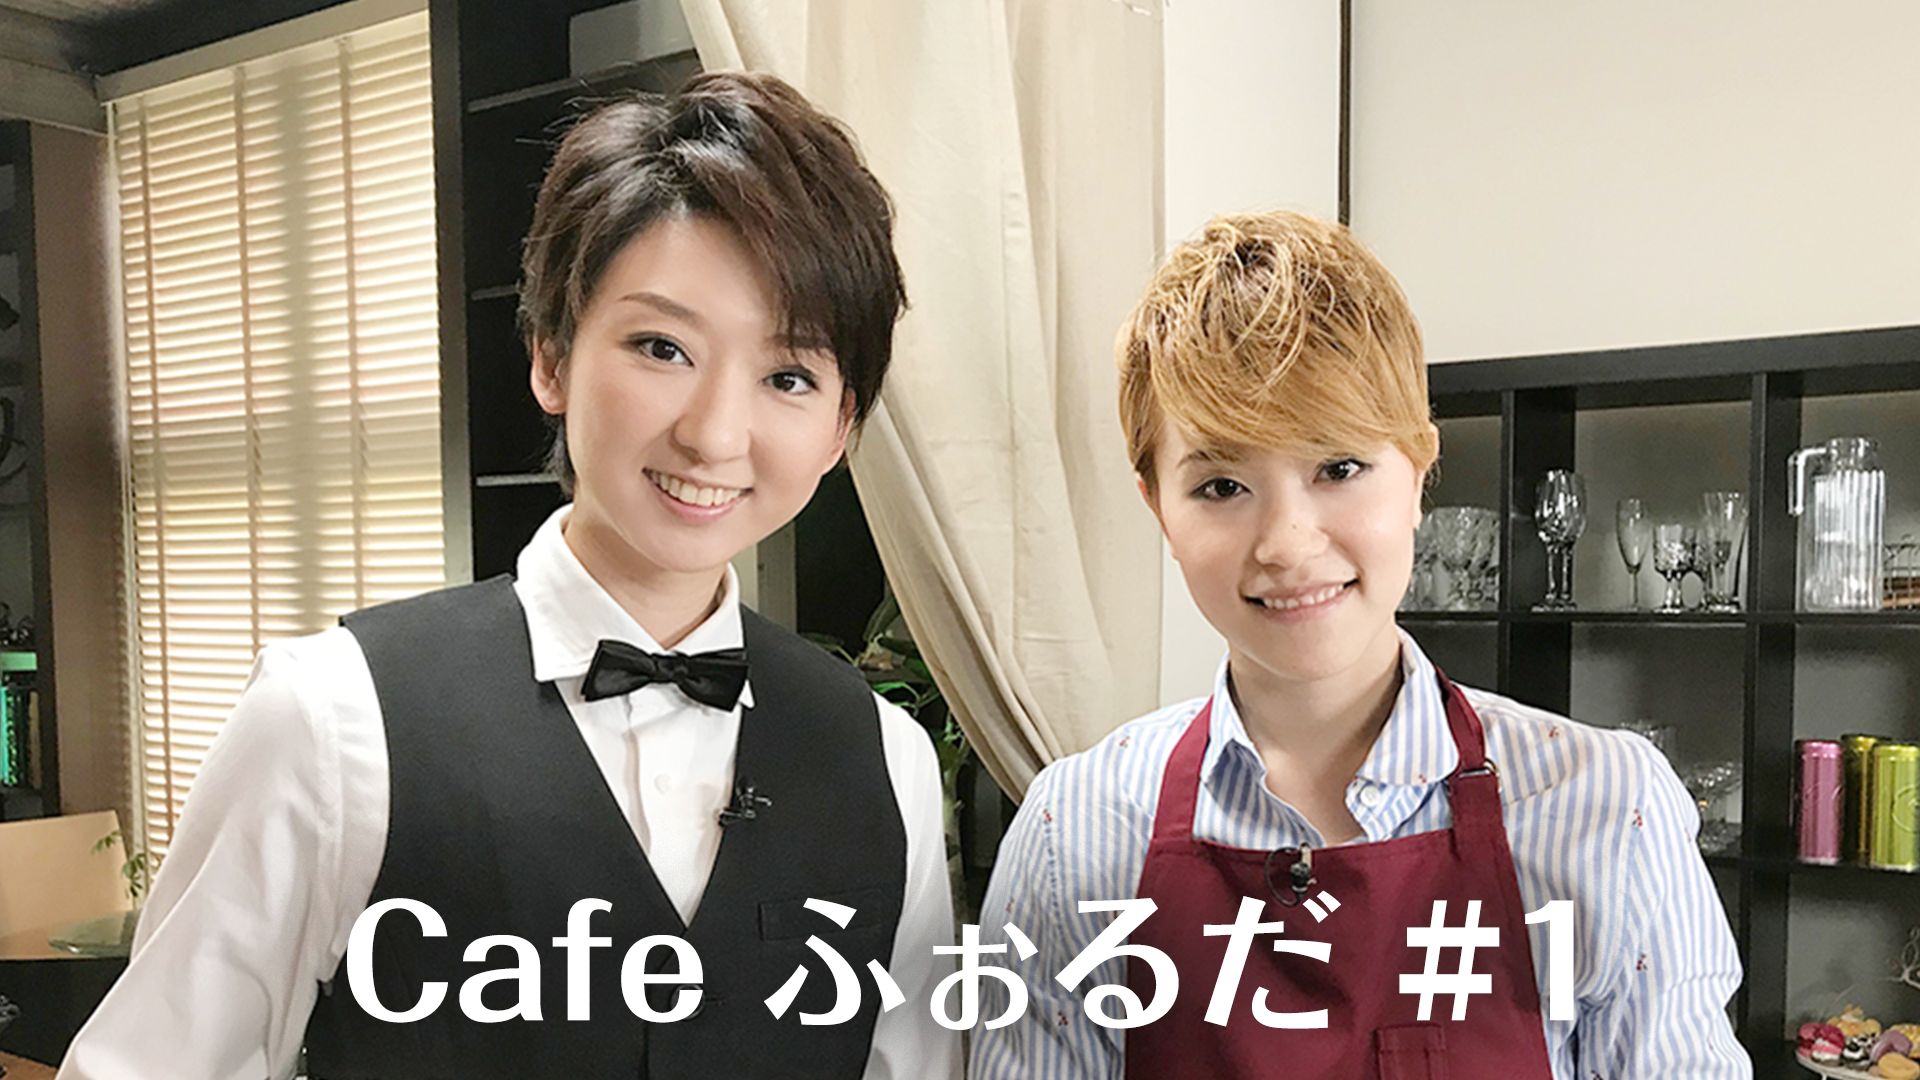 Cafe ふぉるだ #1